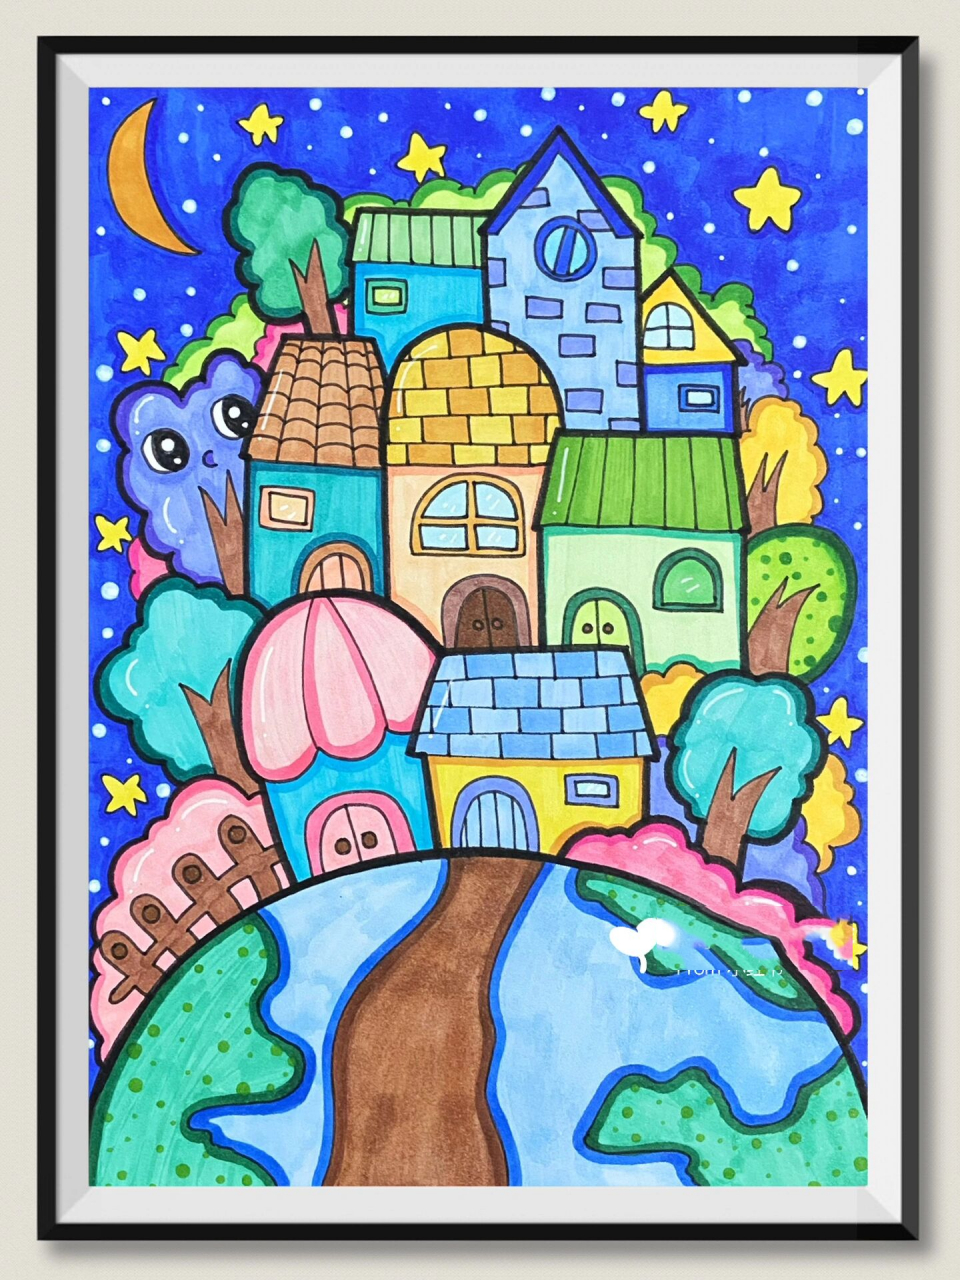 马克笔儿童创意画《同住地球村》            画纸:荷兰白卡a5 主题